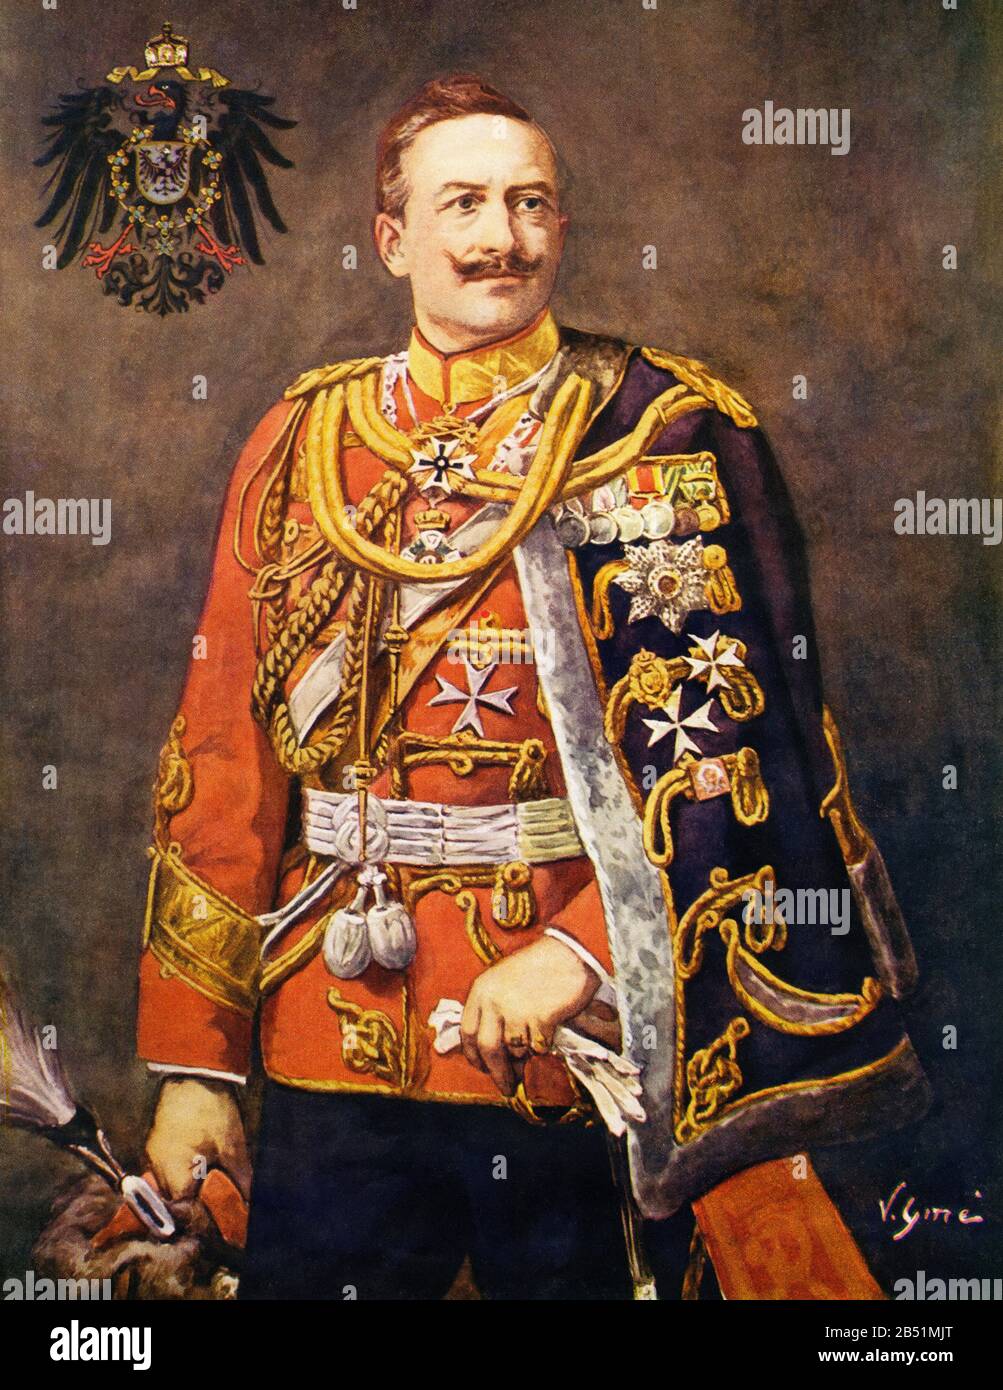 Color portrait of William II of Germany. Wilhelm II Friedrich Wilhelm Viktor Albrecht von Preußen (Berlin 1859 - Doorn 1941), was the last emperor or Stock Photo